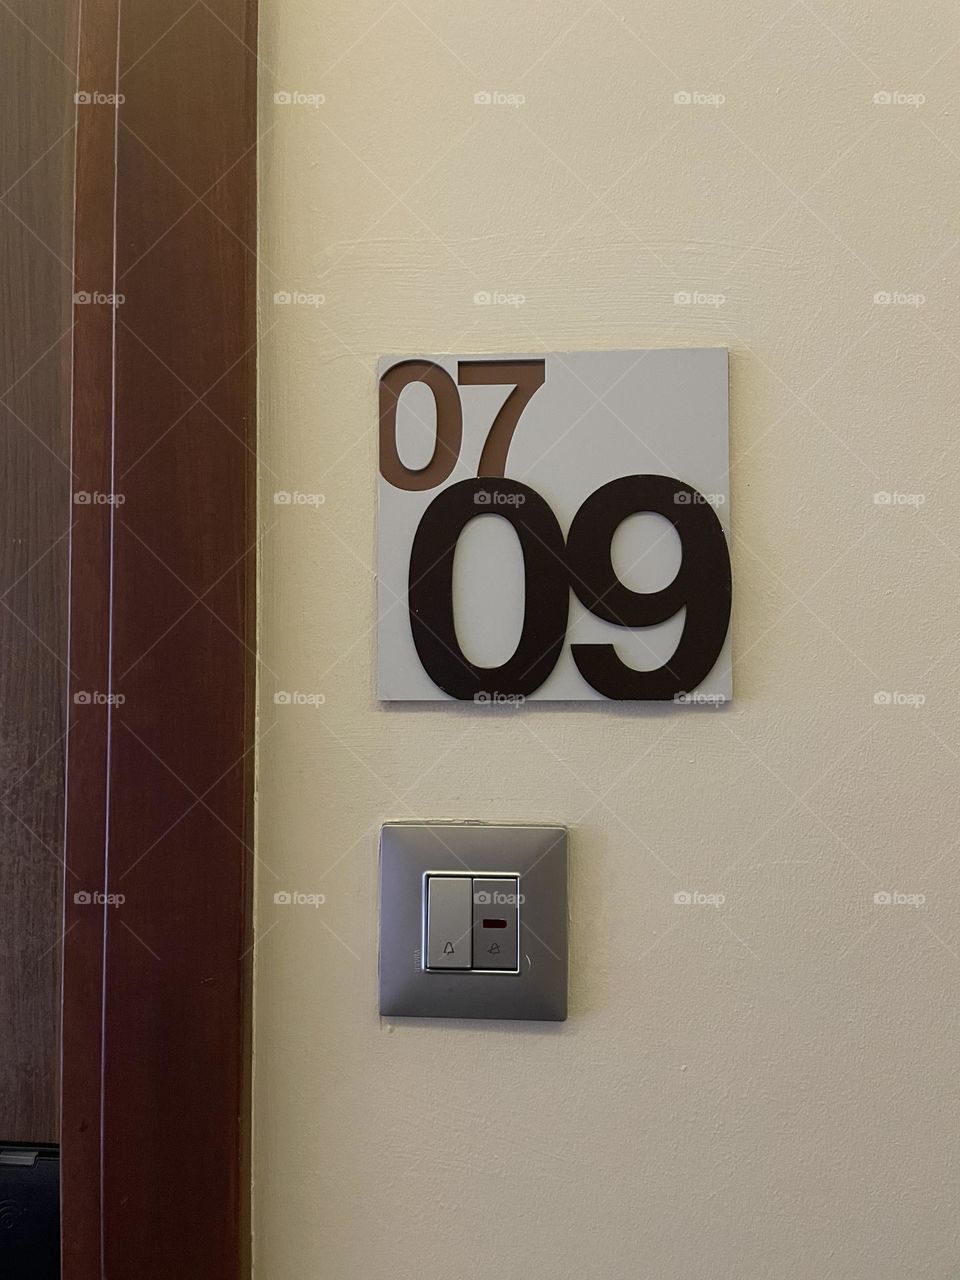 Room No. 09